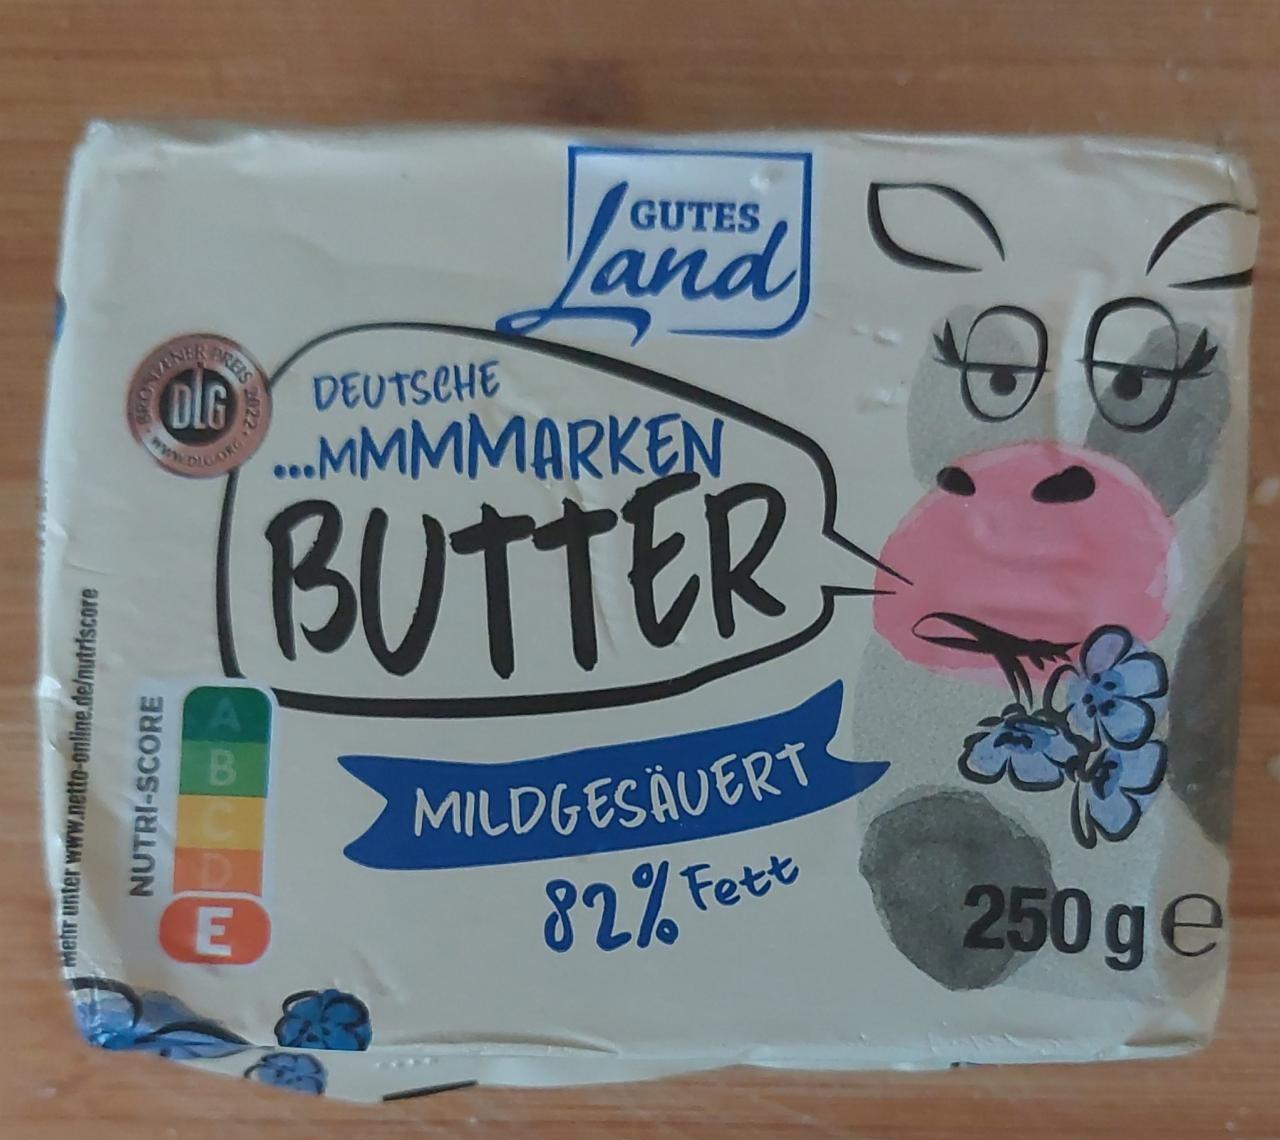 Fotografie - Butter mildgesäuert 82% Fett Gutes Land